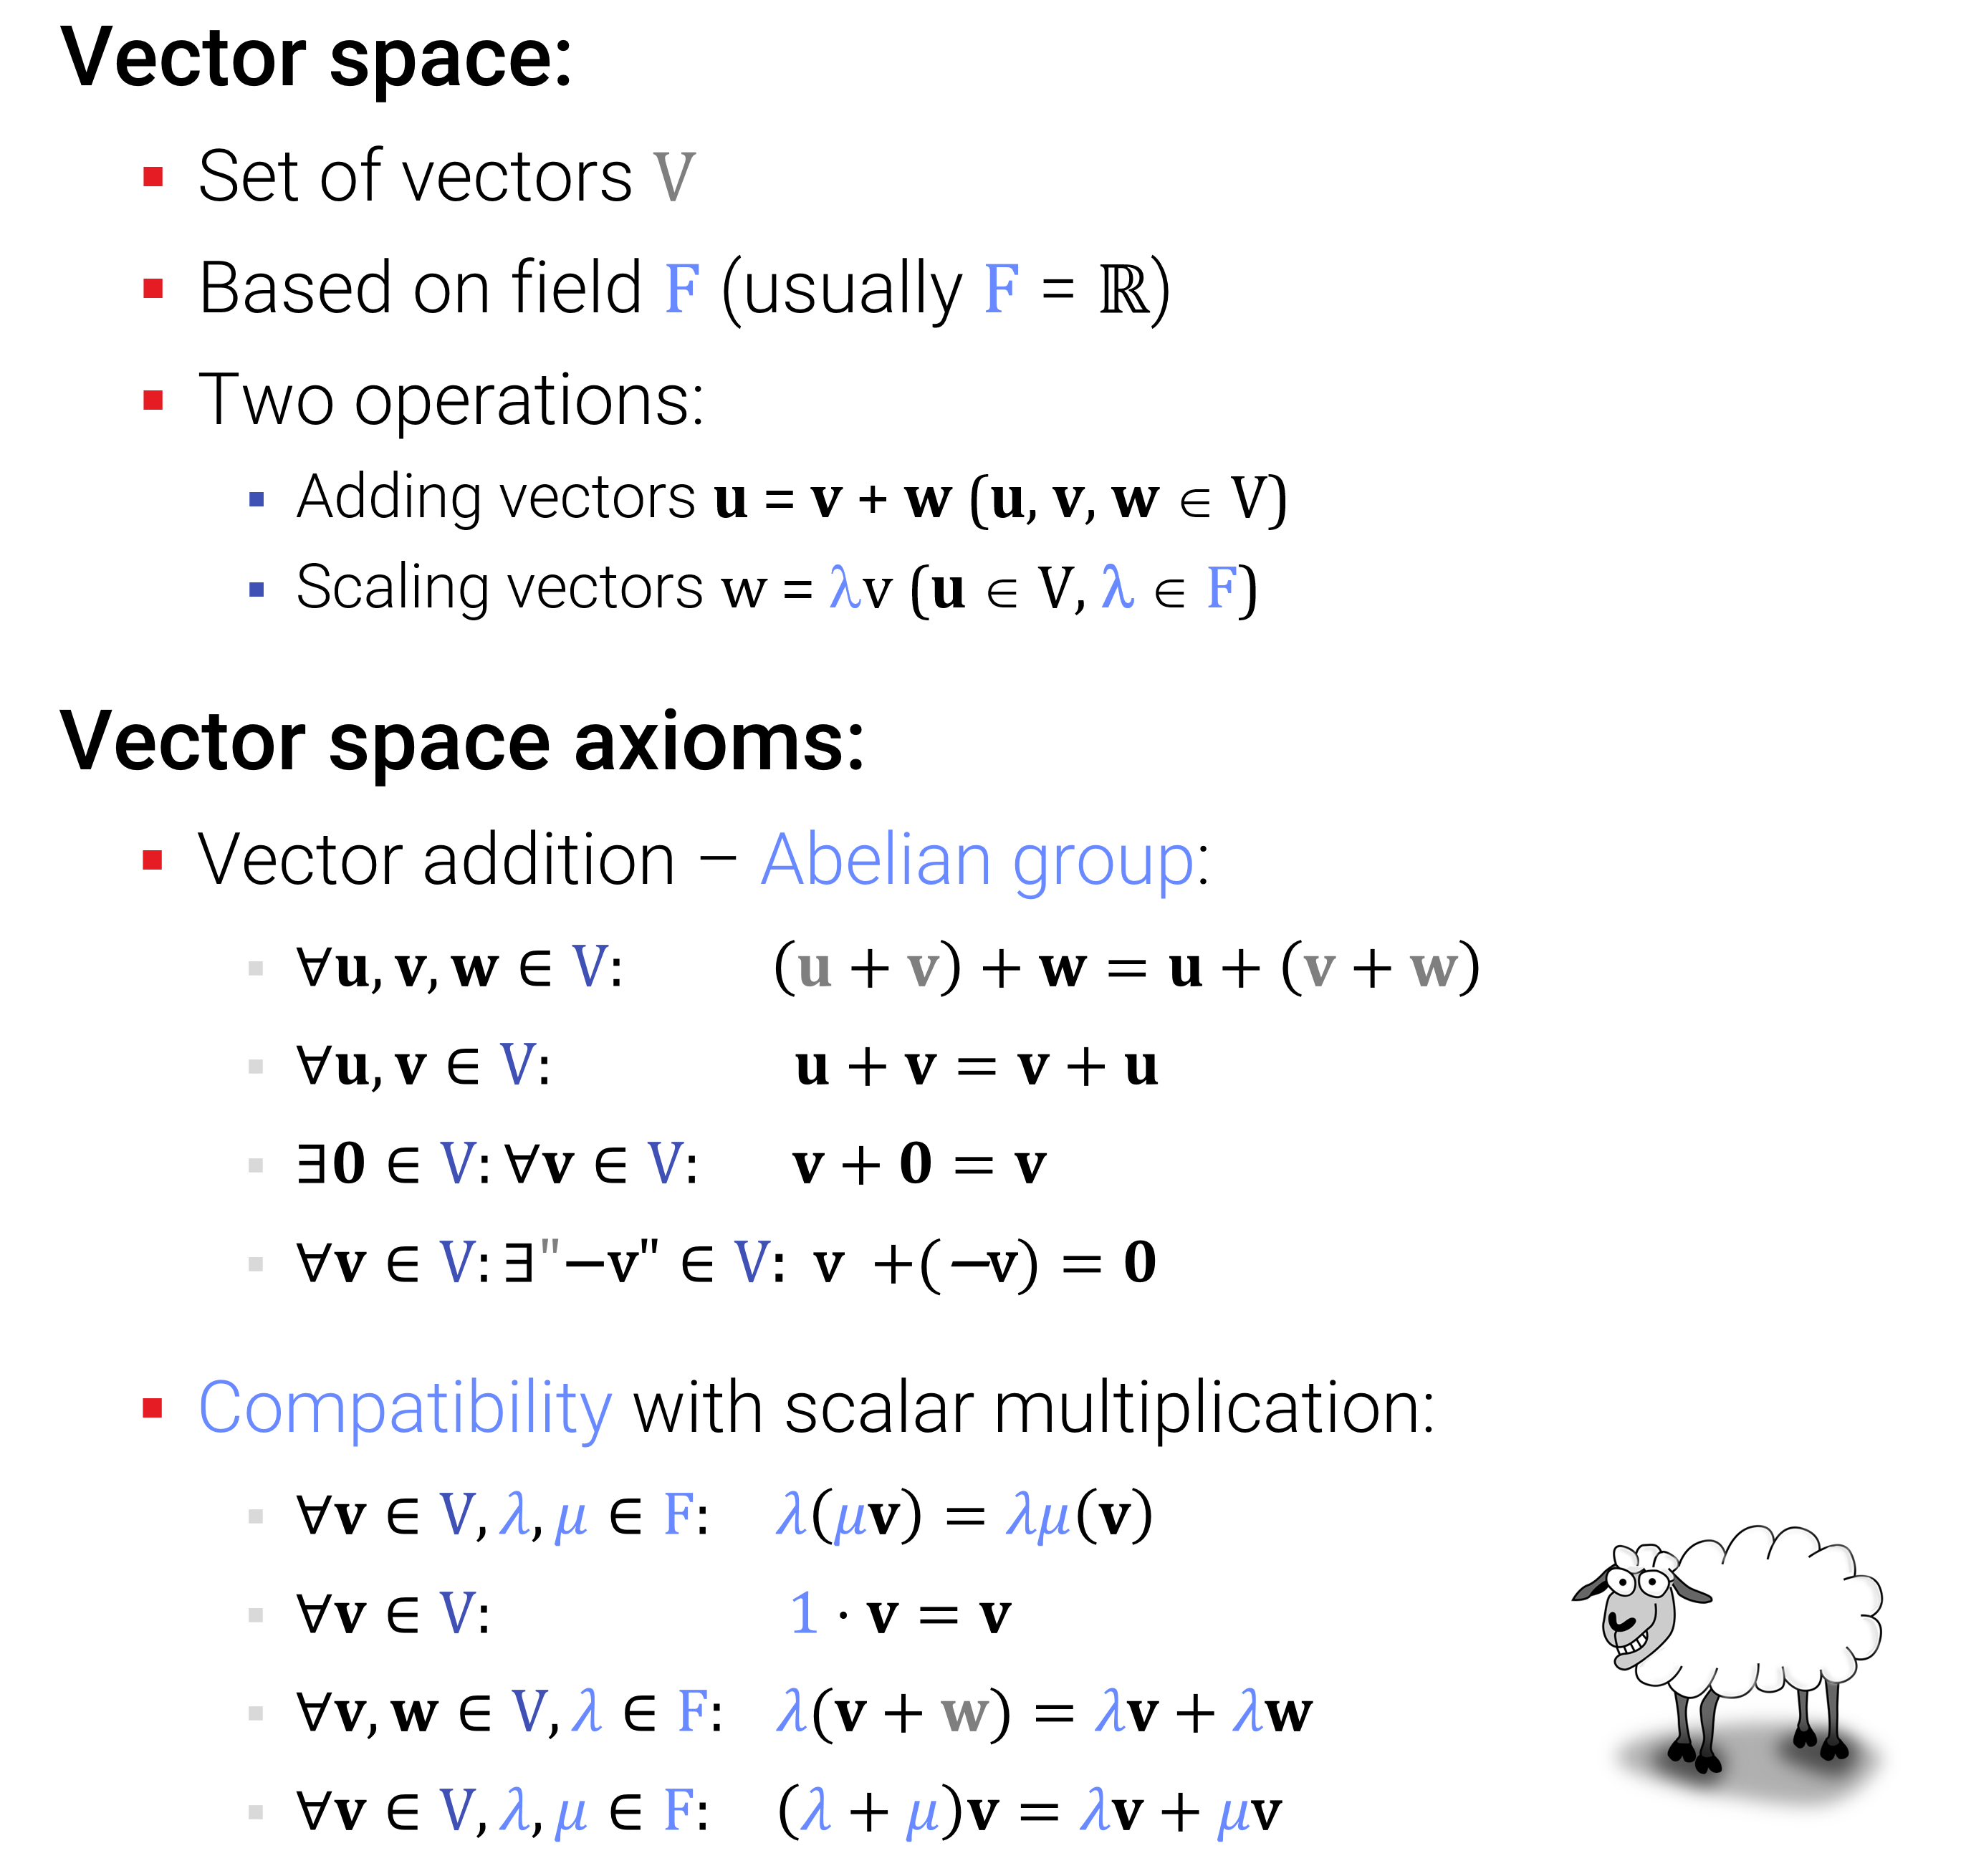 Abbildung: Axiome für den abstrakten Vektorraum. Das sollten Sie auch aus den Mathematik-Grundvorlesungen kennen. Bloß - was macht das Schaf hier?!